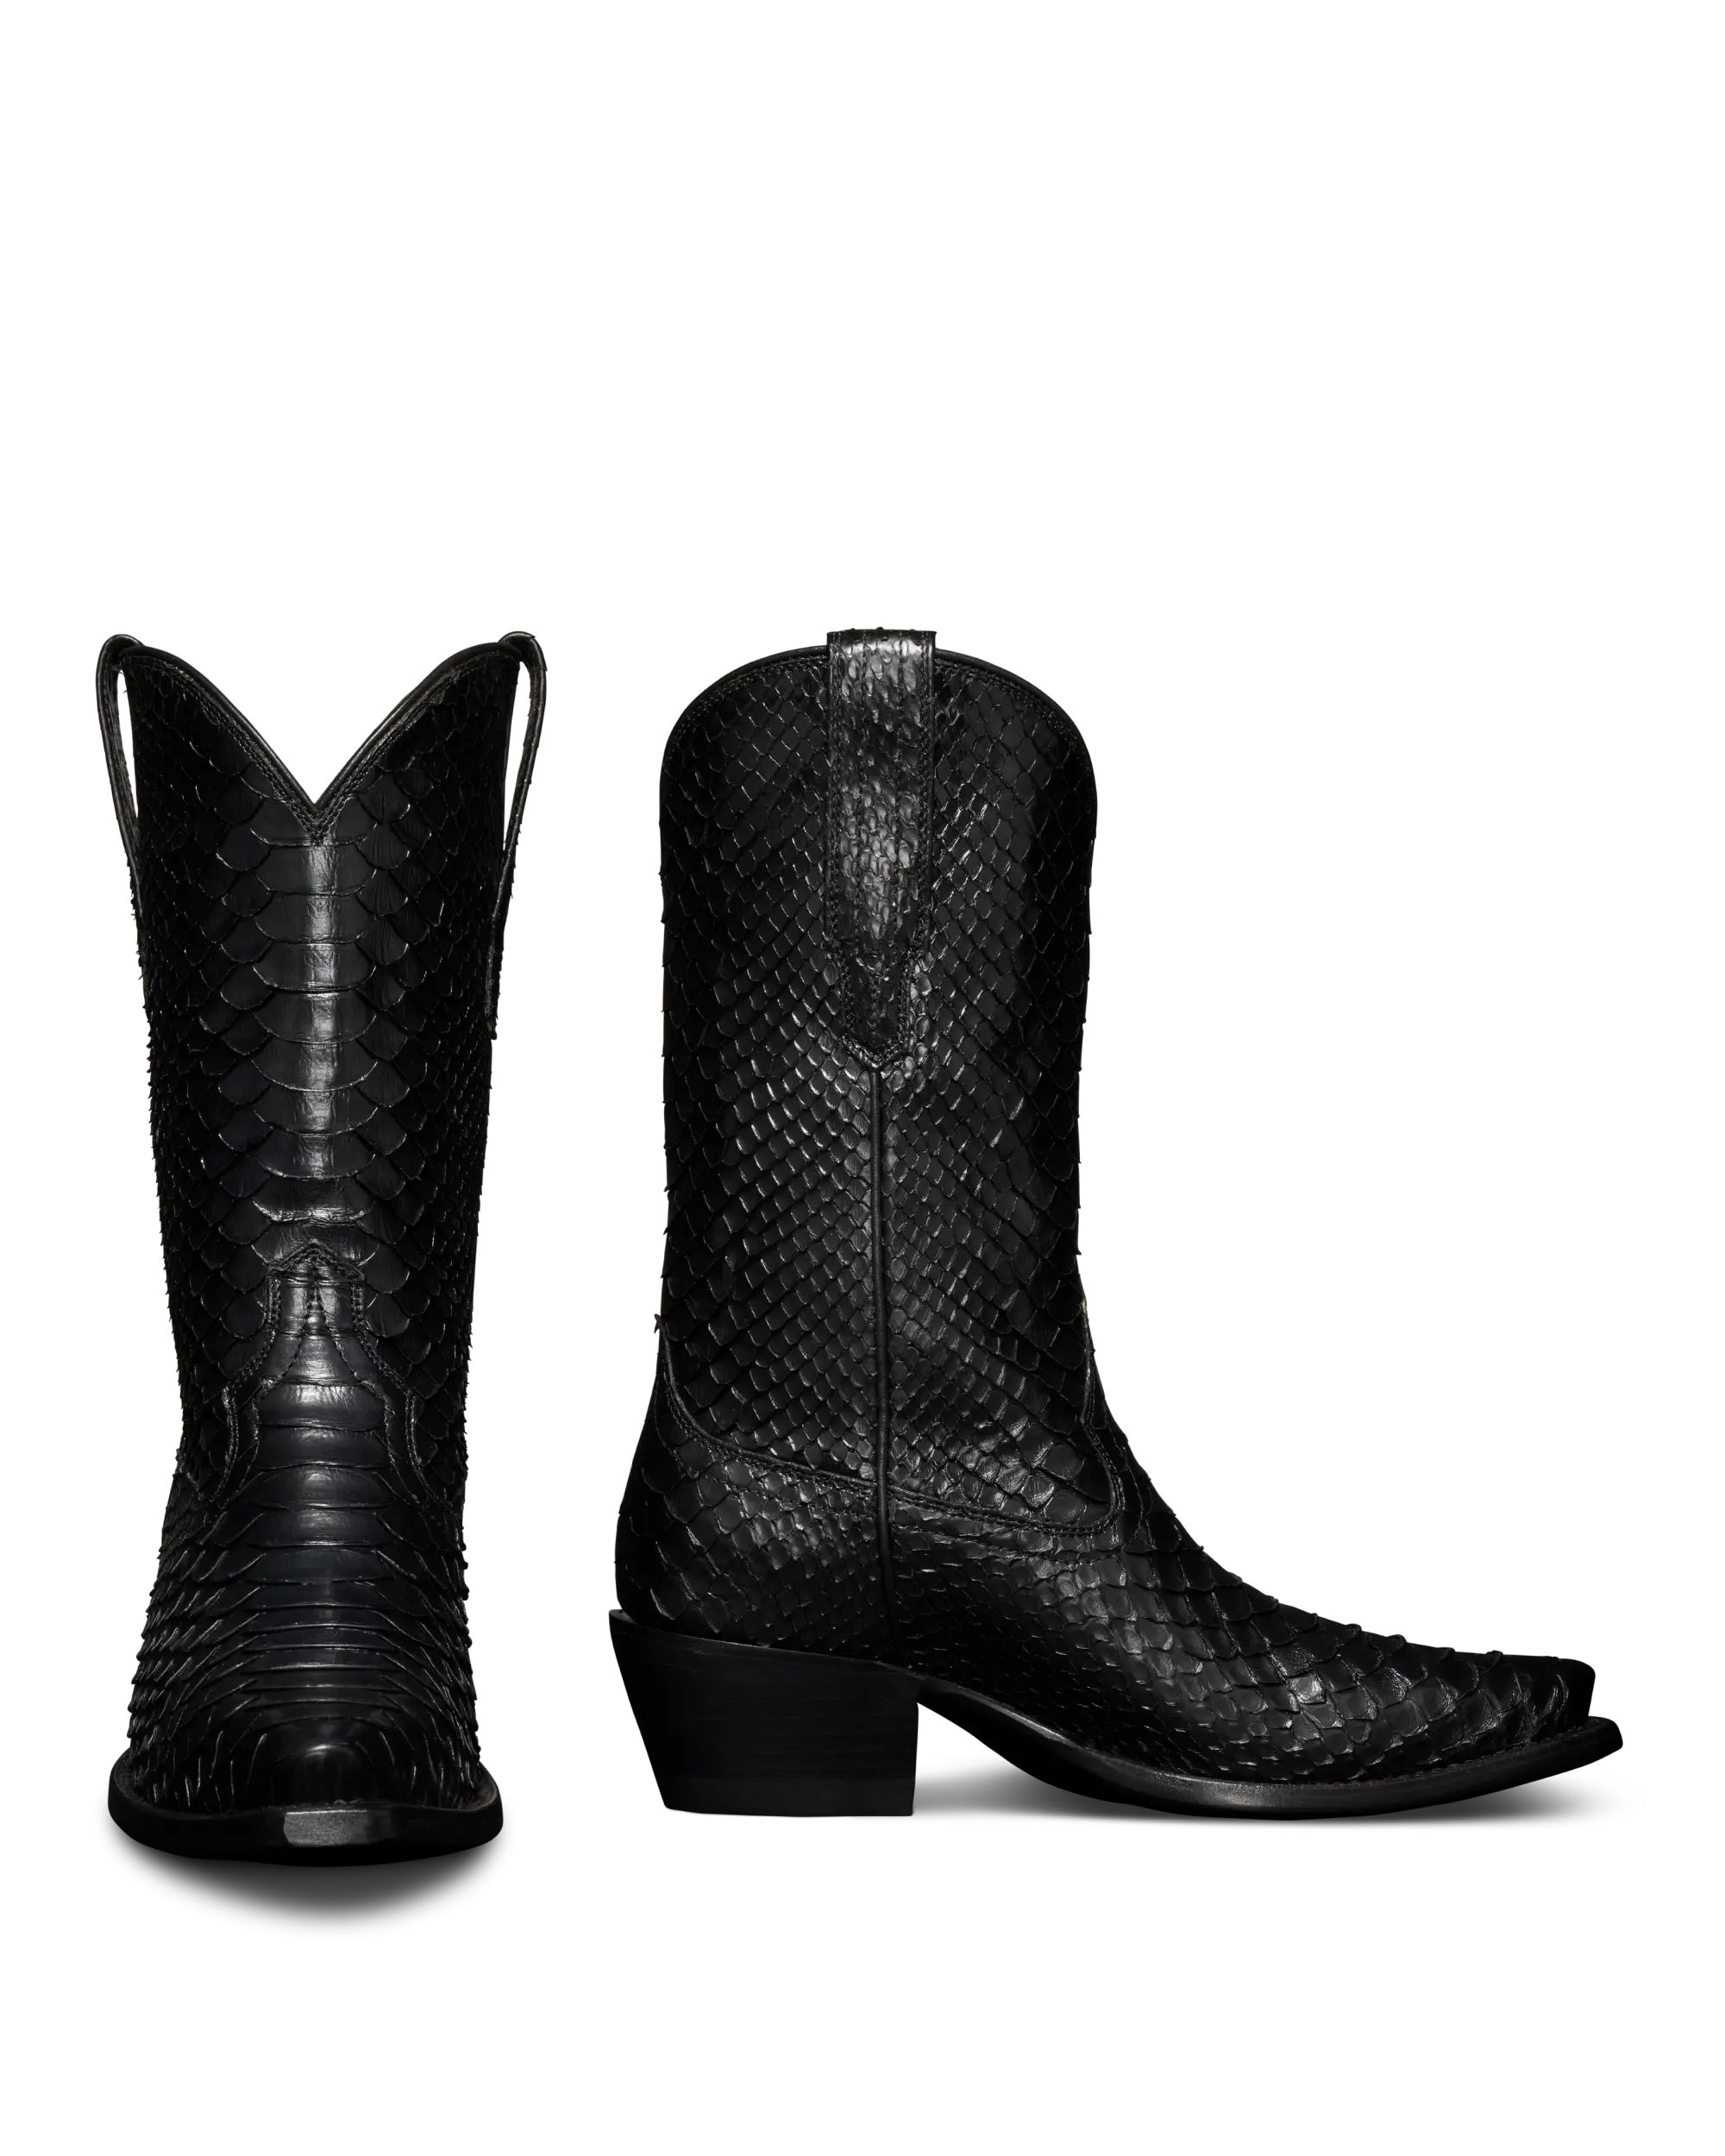 Women's Snakeskin Boots |  The Savannah - Midnight | Tecovas | Tecovas